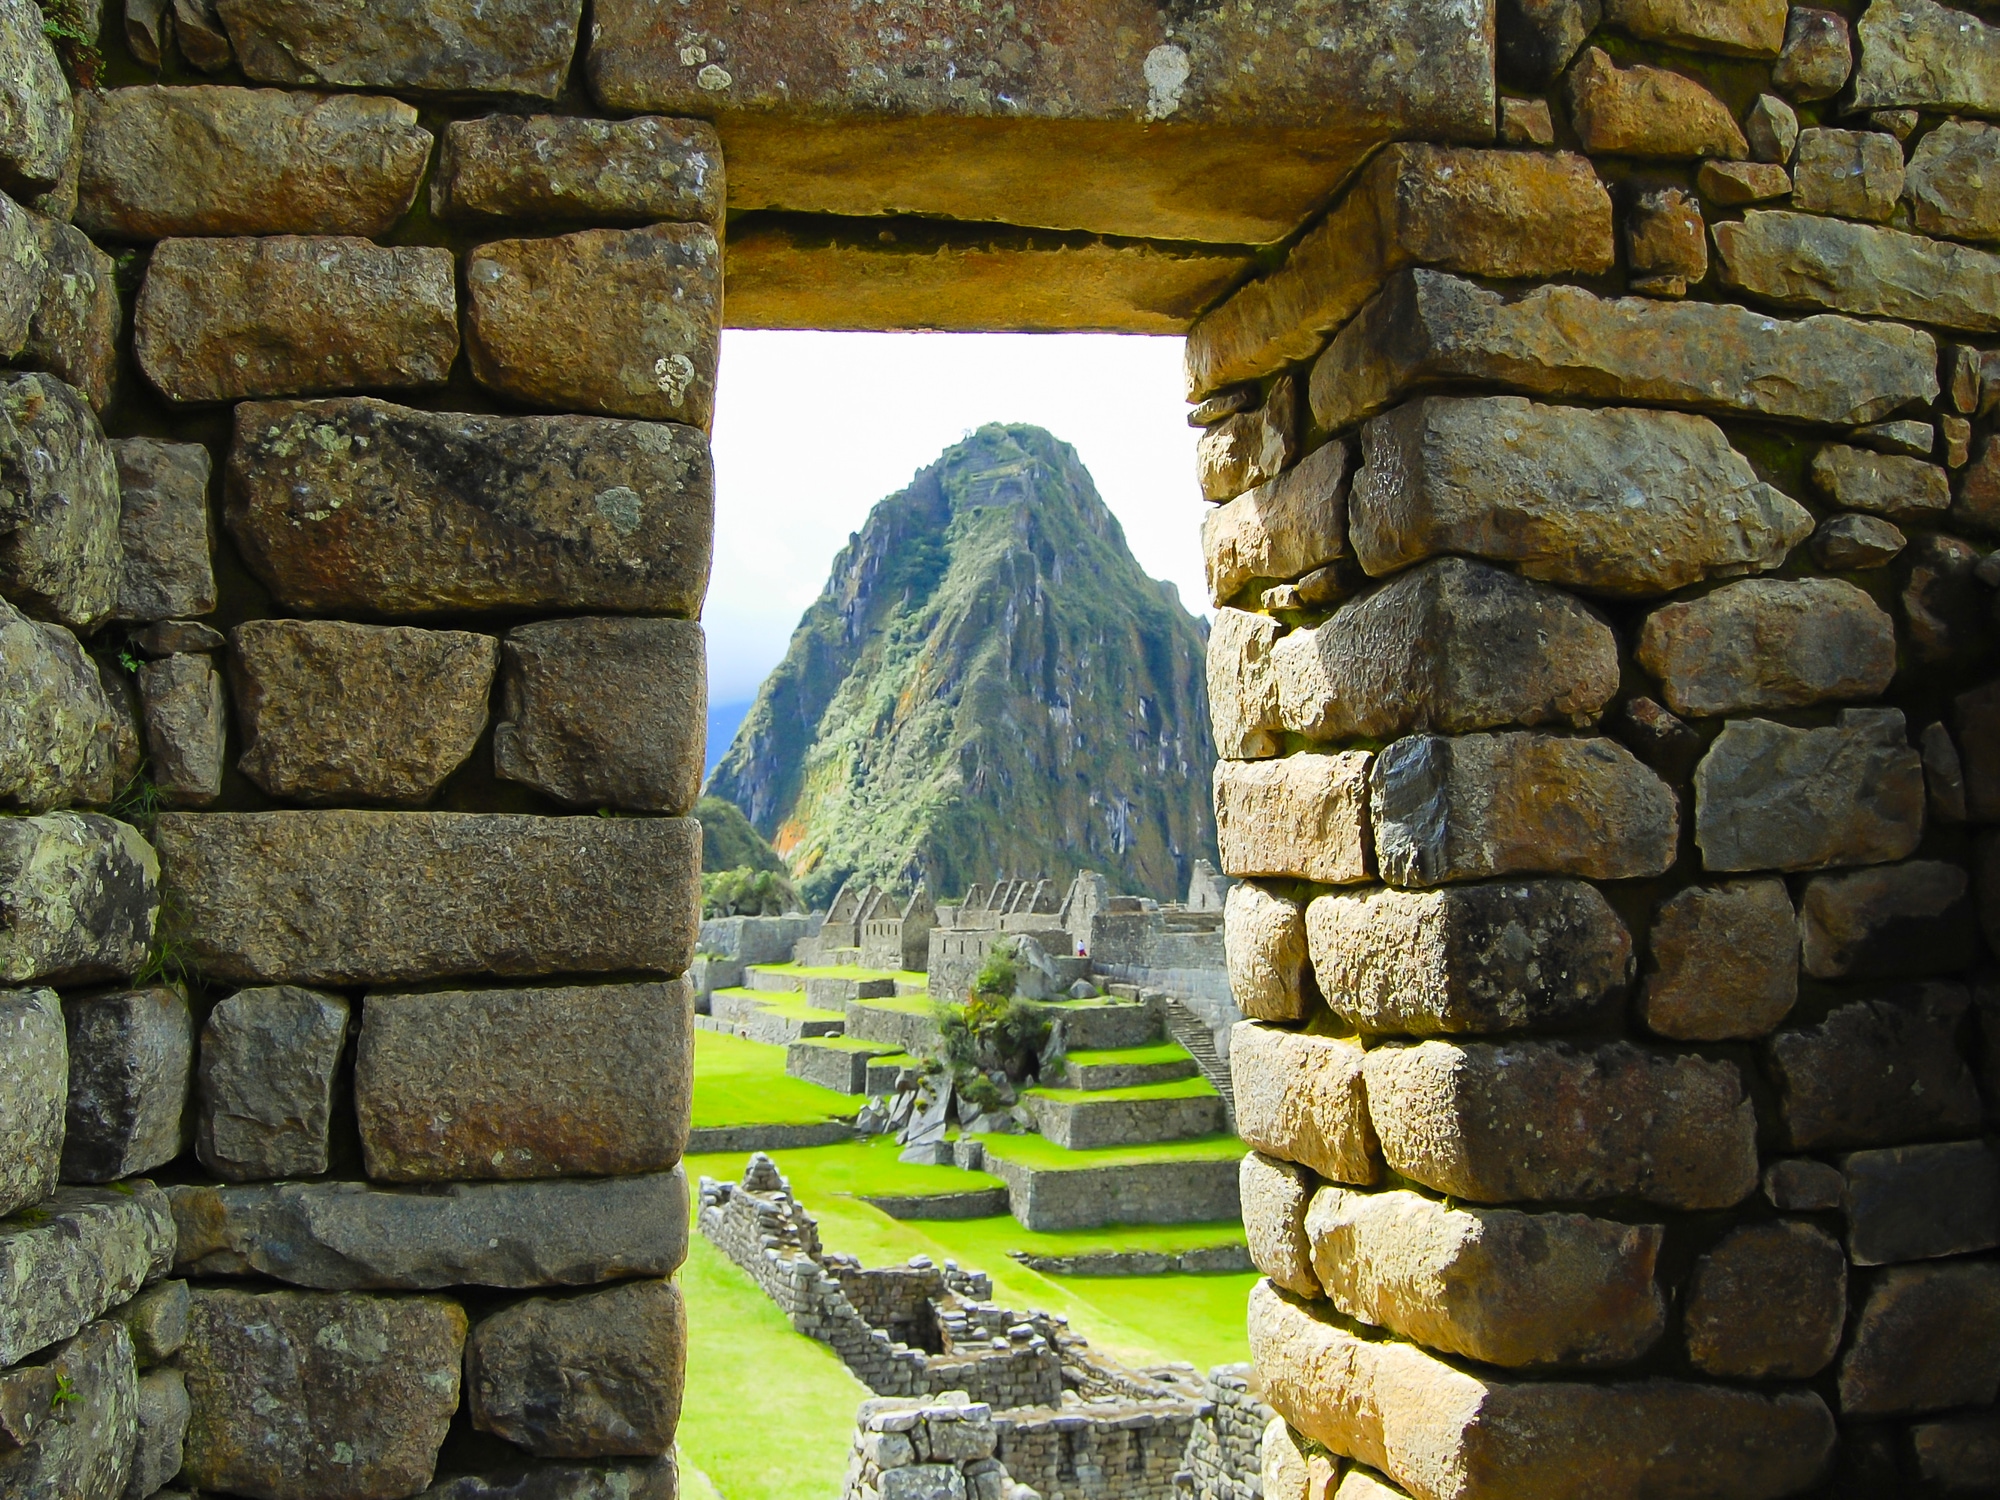 Sur les traces des Incas